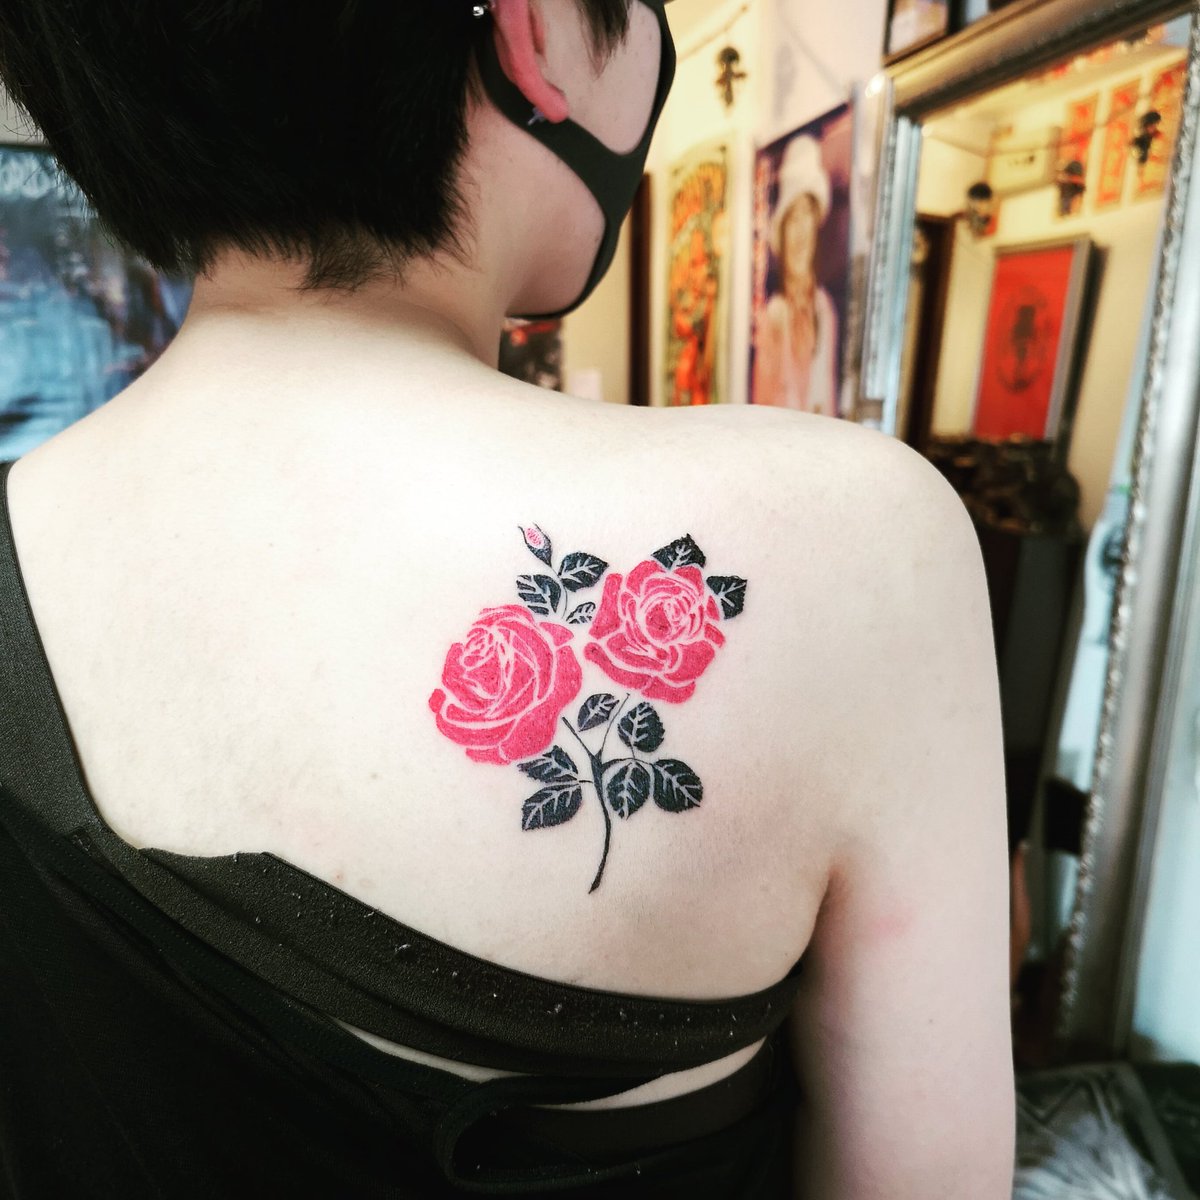 東大阪市タトゥー 仁童文身 Twitterissa 薔薇の刺青 自然なデザインに見えますが 輪郭を逆抜き 地肌を輪郭にしています にてstab致しております 薔薇タトゥー Rosetattoo トライバルタトゥー トライバル 大阪タトゥー バラタトゥー Bodyblasttattoo